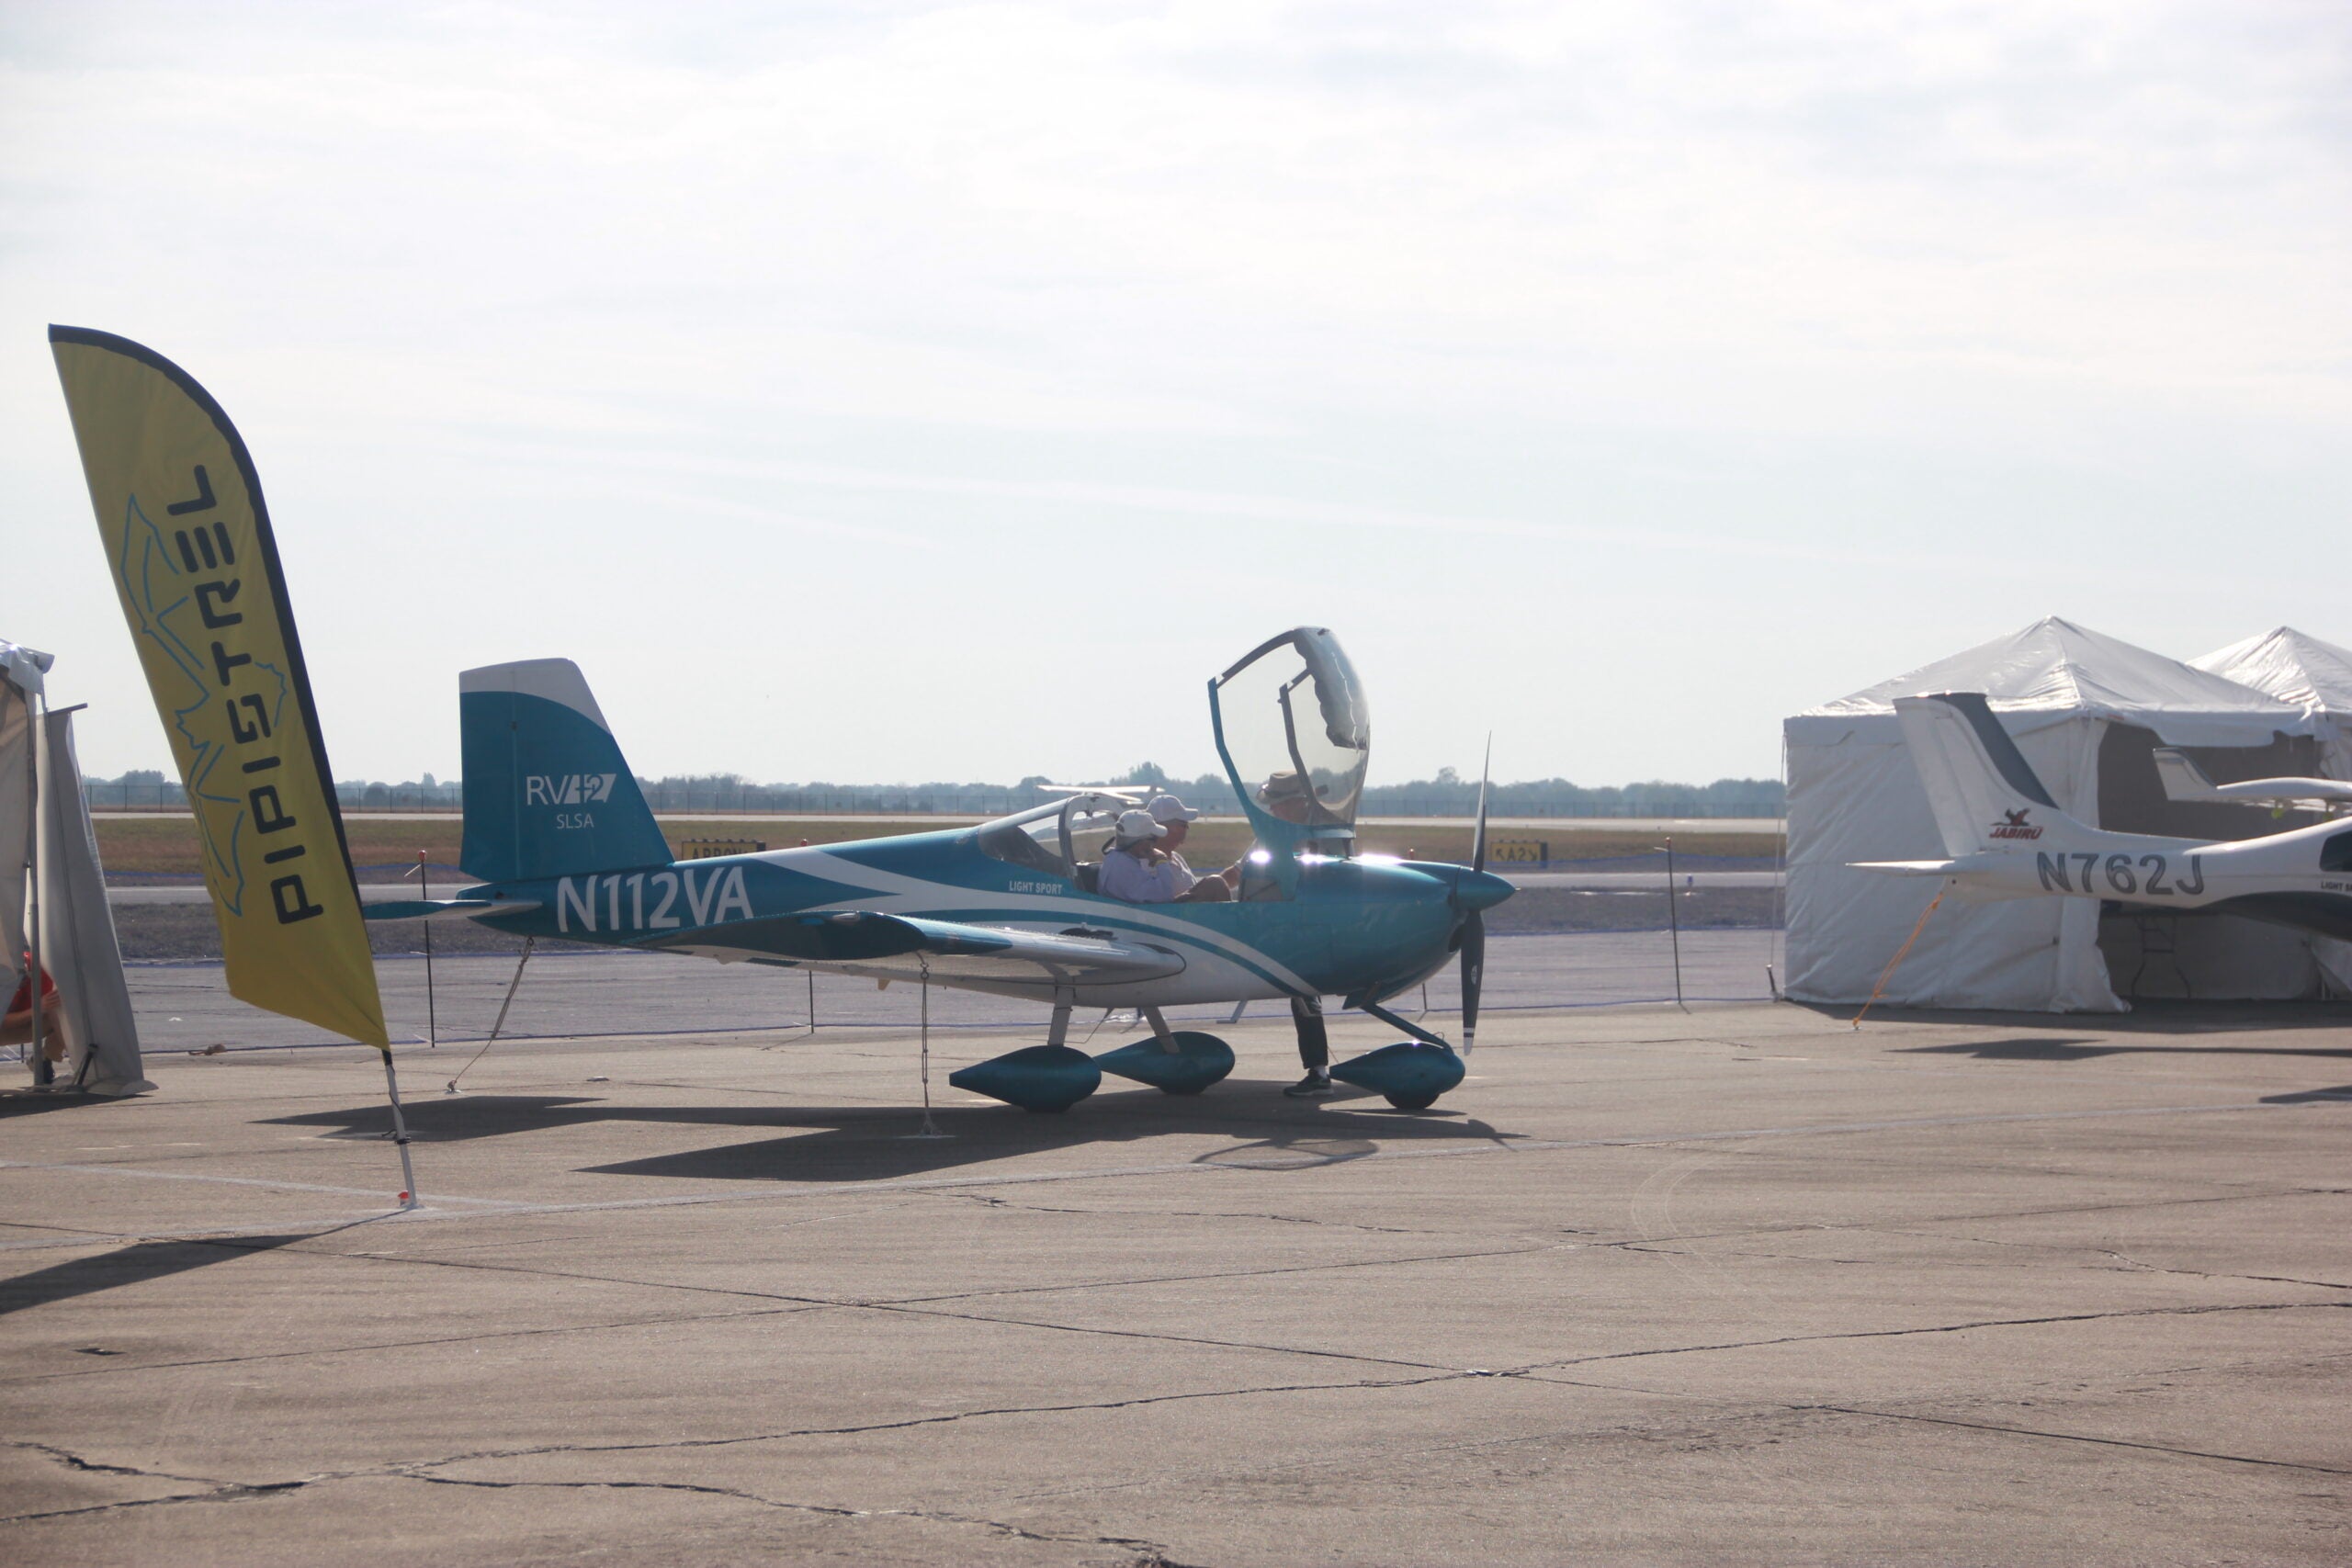 Sebring US Sport Aviation Expo